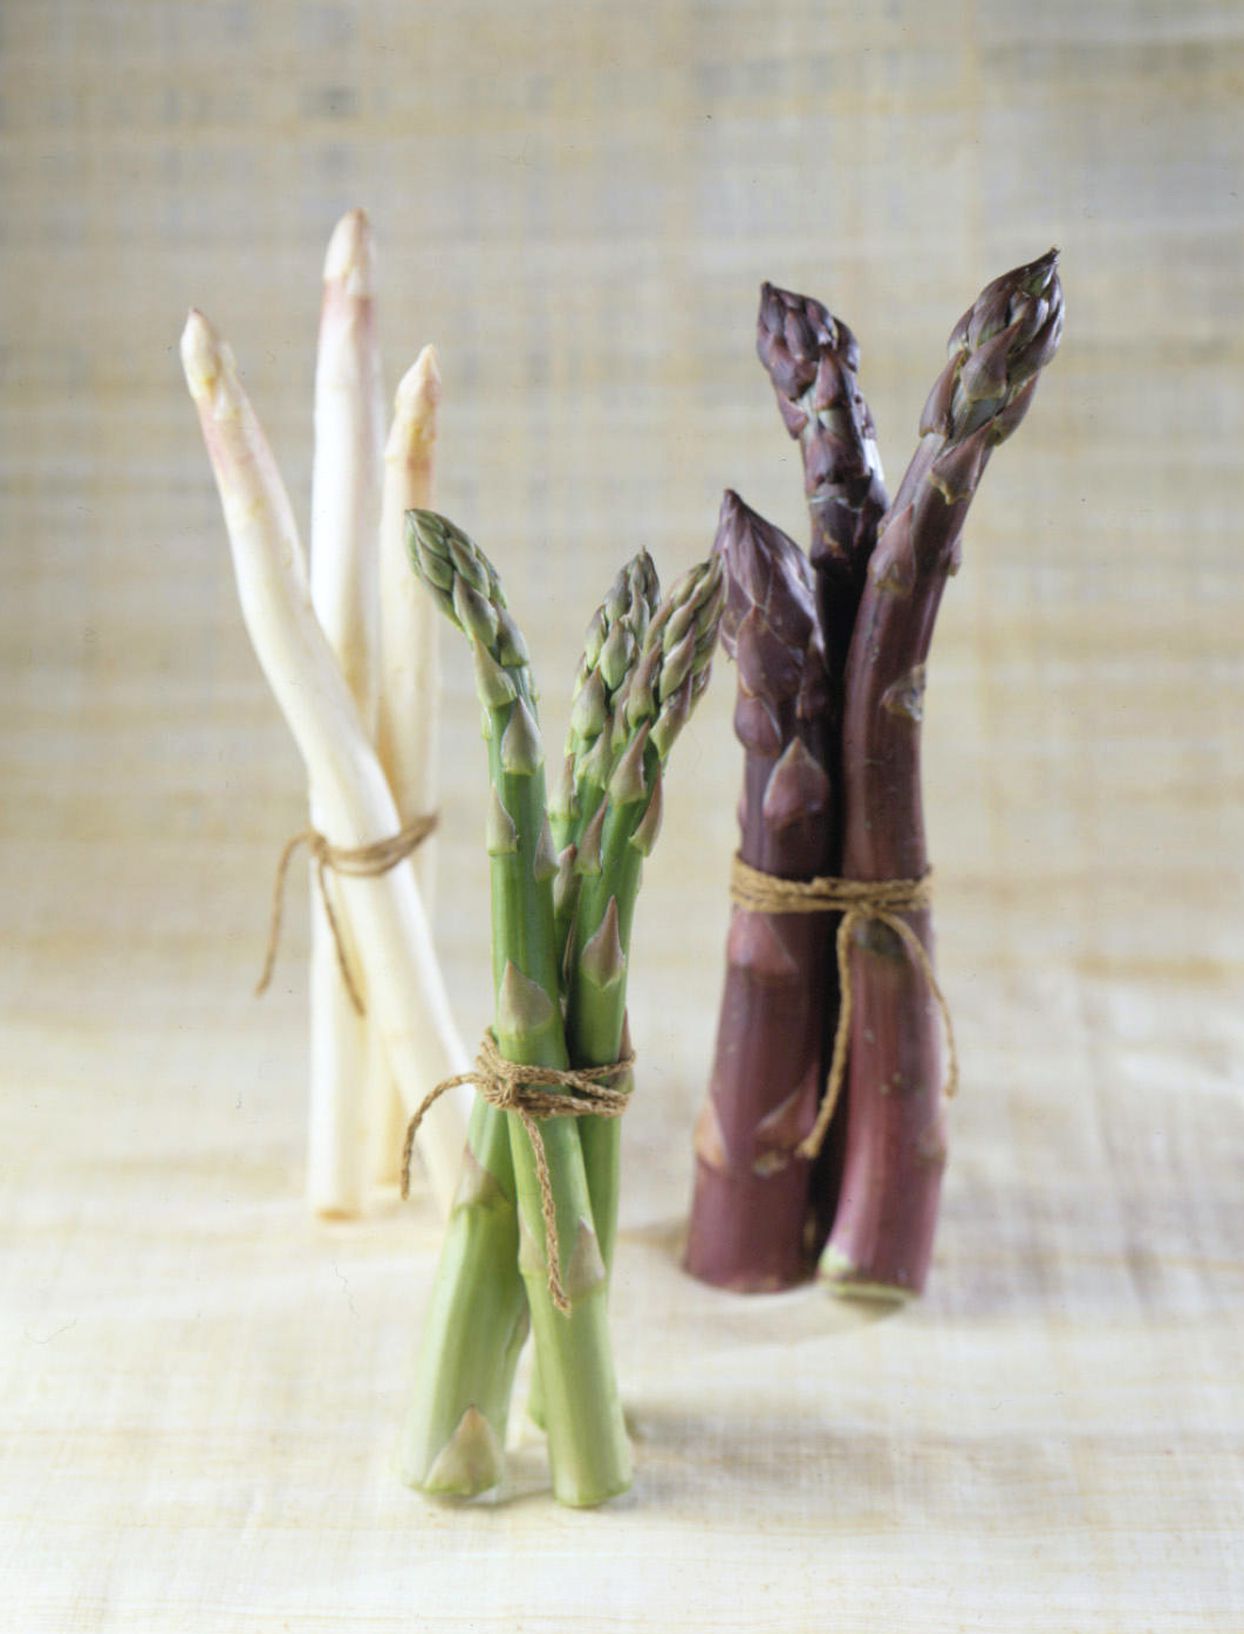 'Purple Passion' asparagus